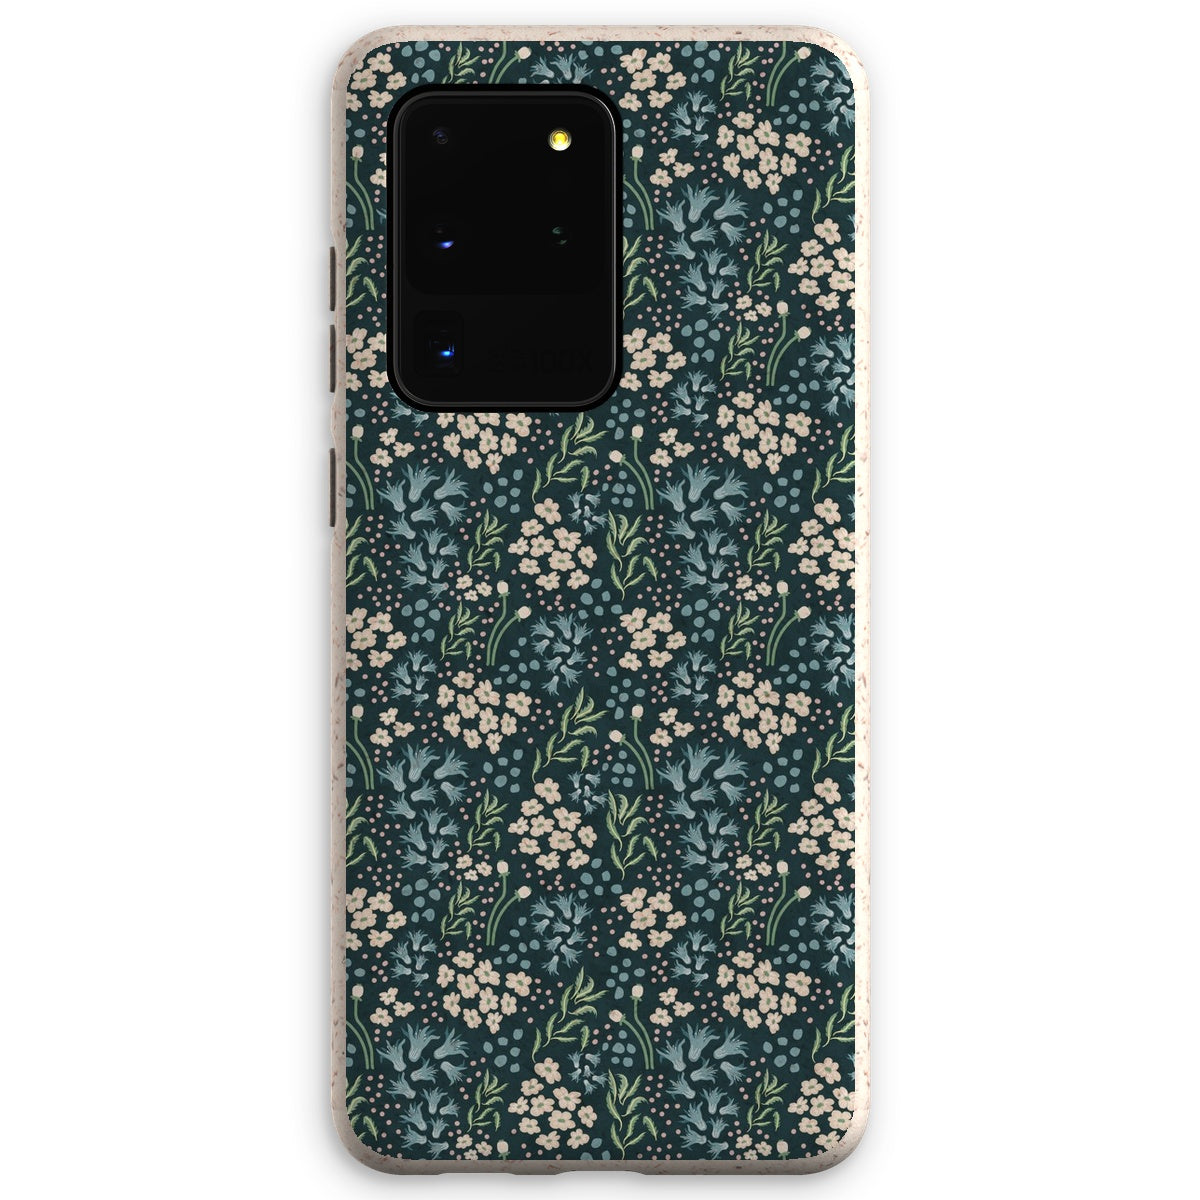 Teal Elegance: Vintage Floral Ditsy Eco Phone Case